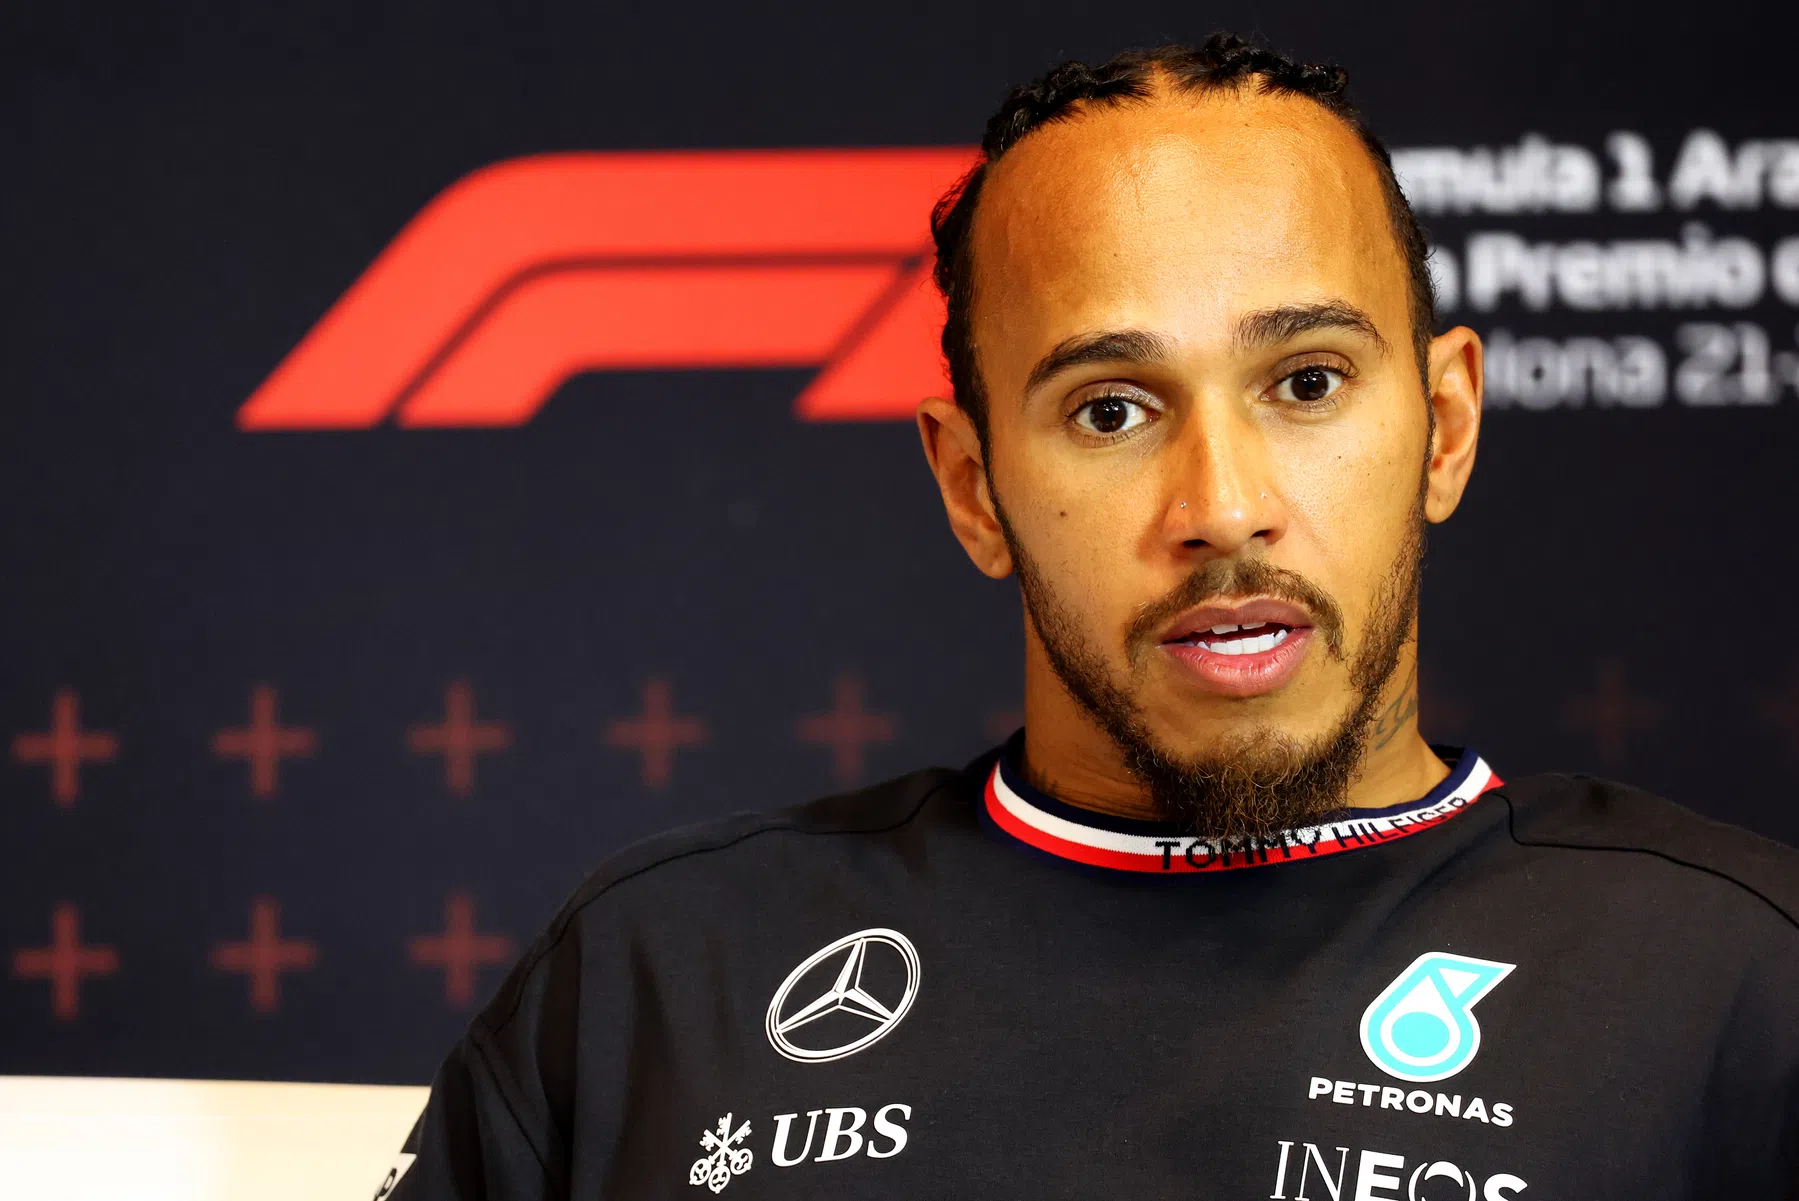 Lewis Hamilton non sa se la vittoria è all'orizzonte per la Mercedes dopo il GP di Spagna